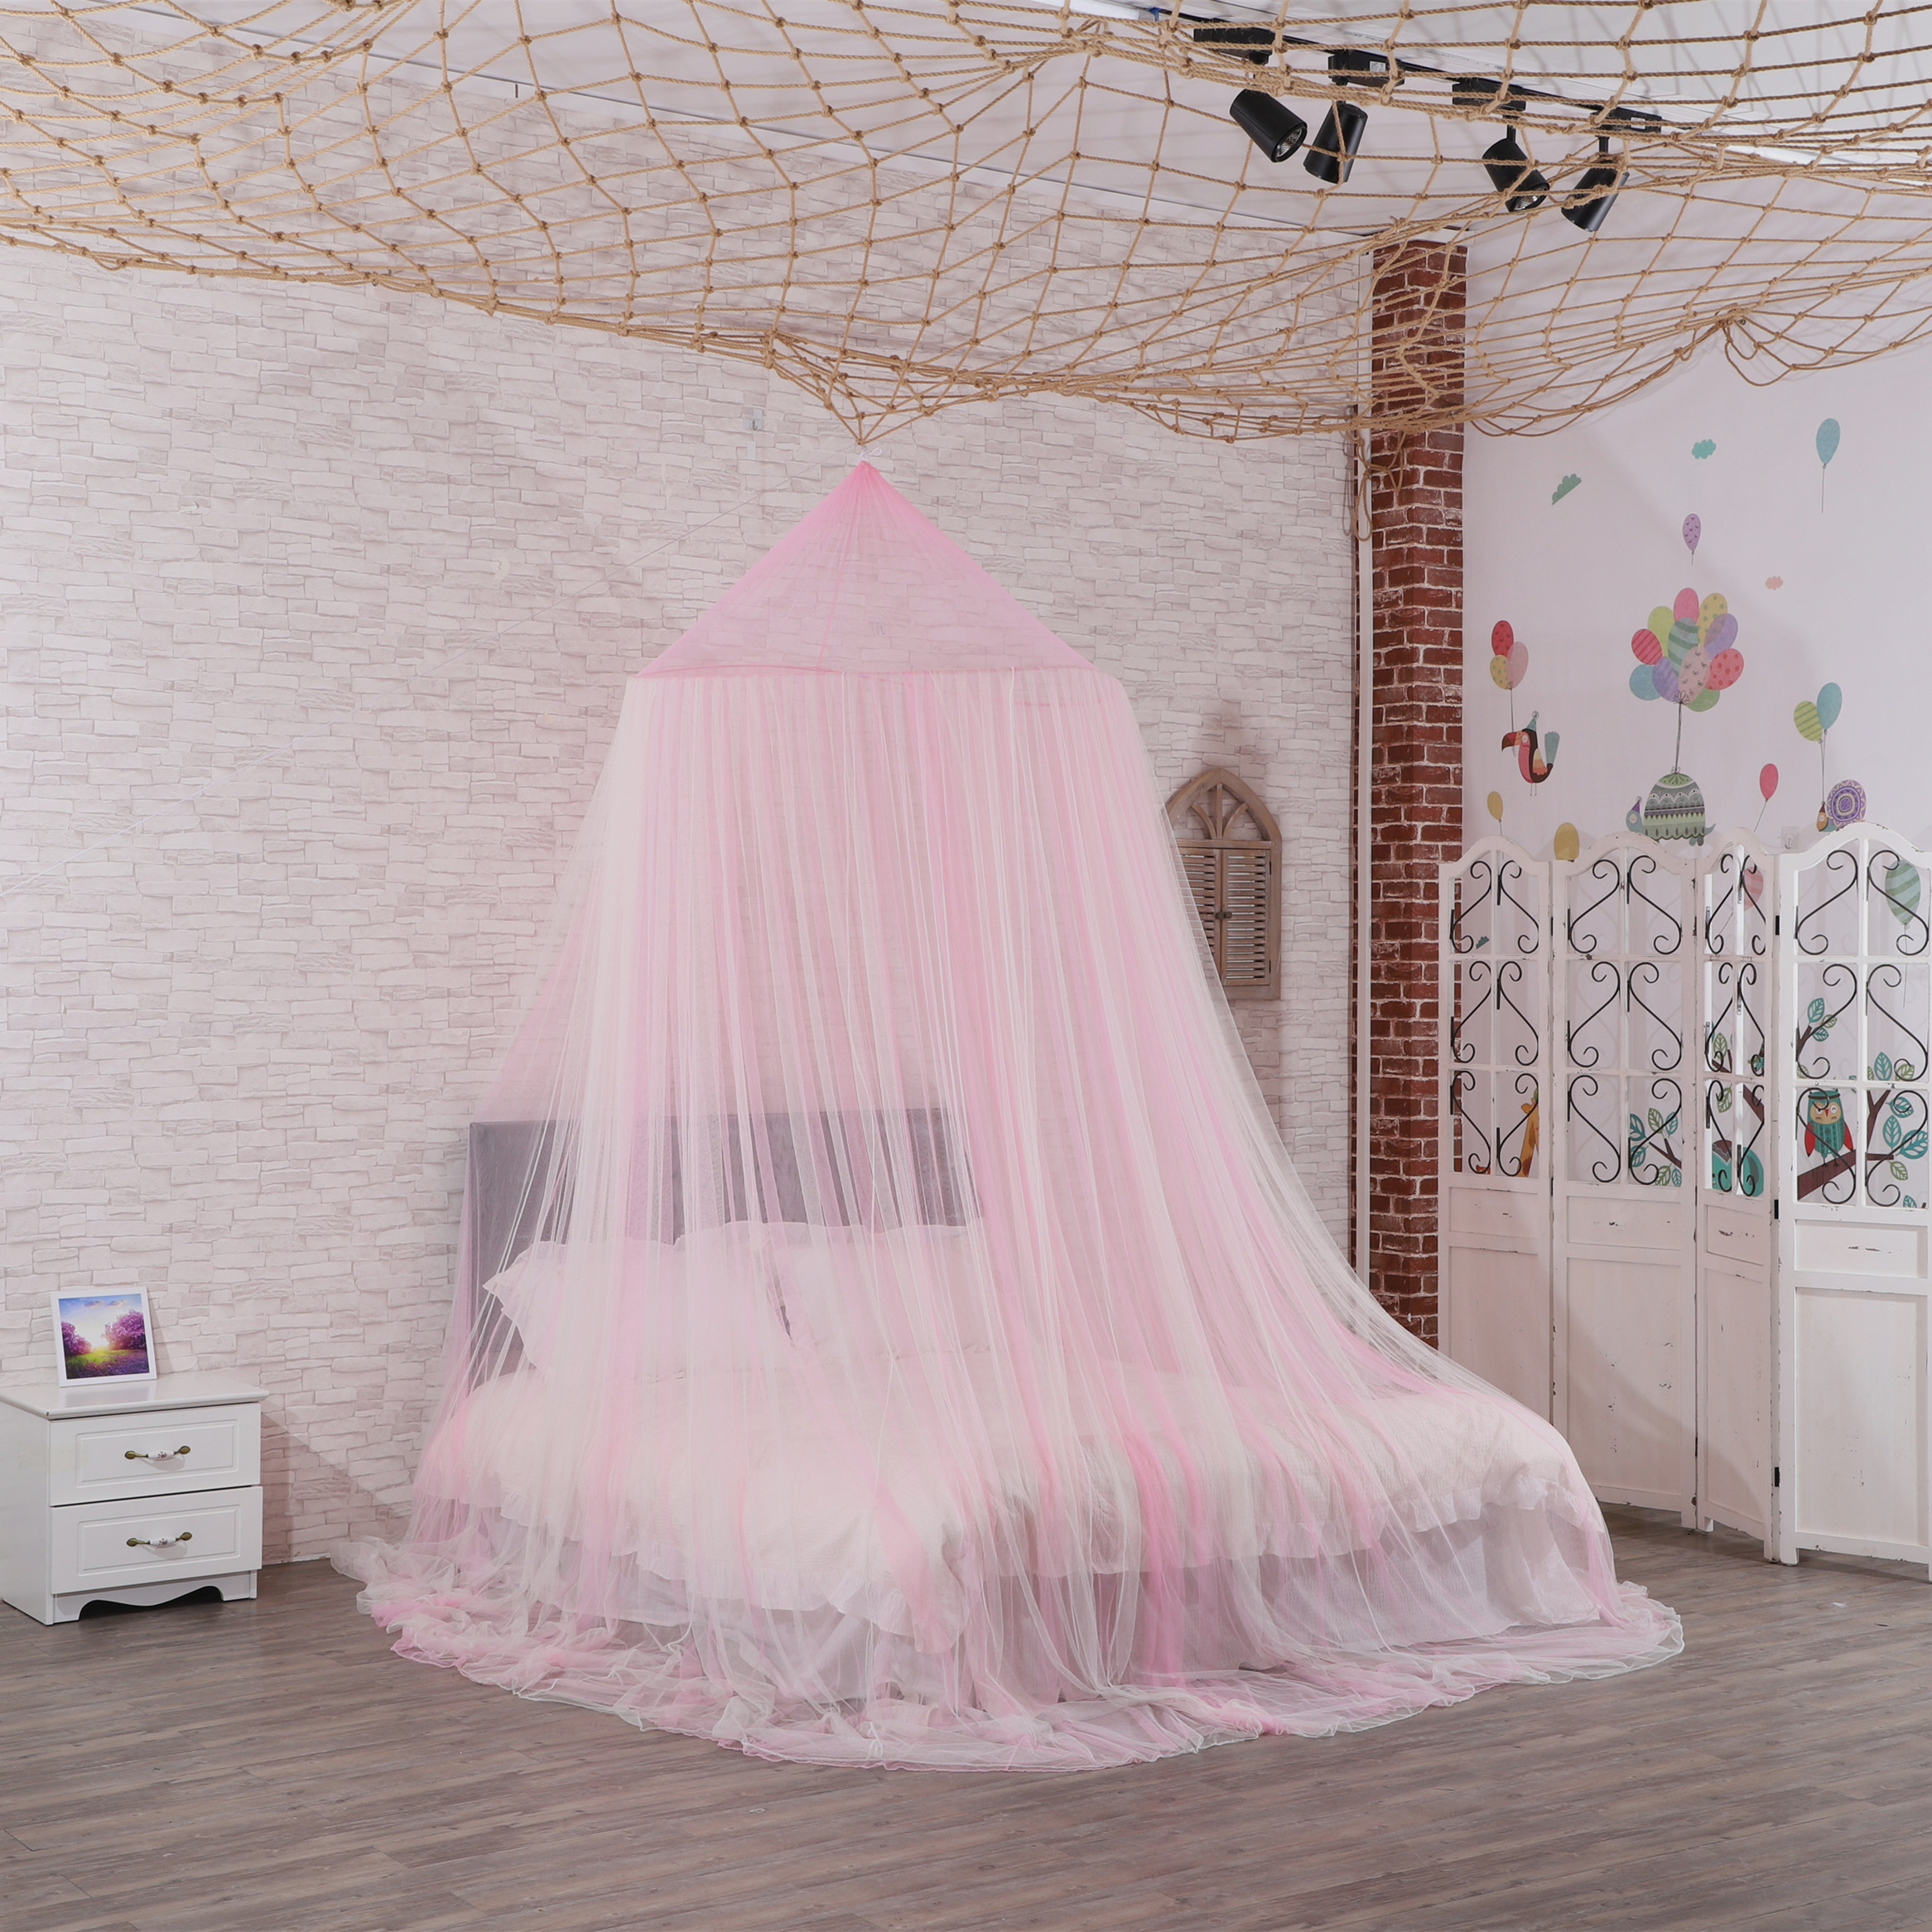 Die beliebtesten hochwertigen Moskitonetz große Kuppel Baldachin Doppelbett Netz King Size Moskitonetz Bett Baldachin für Mädchen